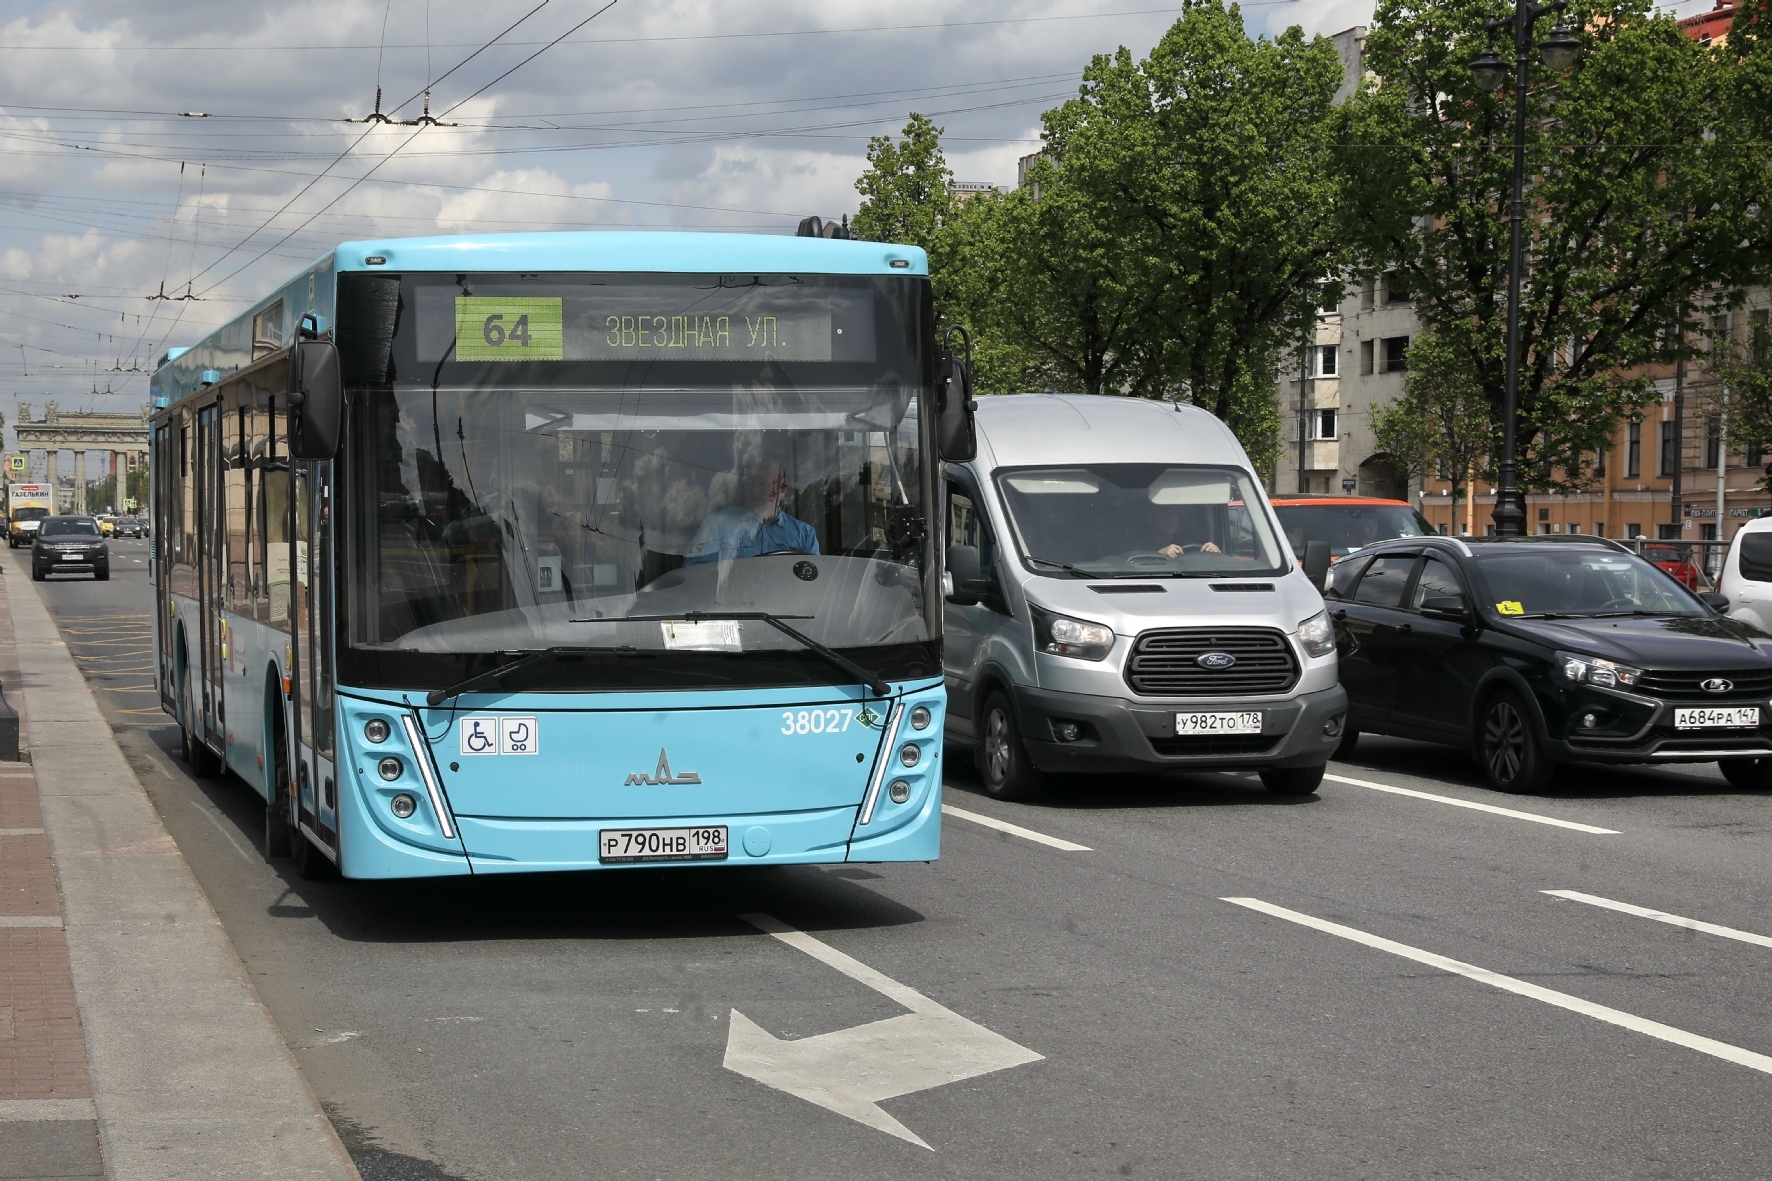 Фото: Транспортная реформа в Петербурге столкнулась с технической проблемой